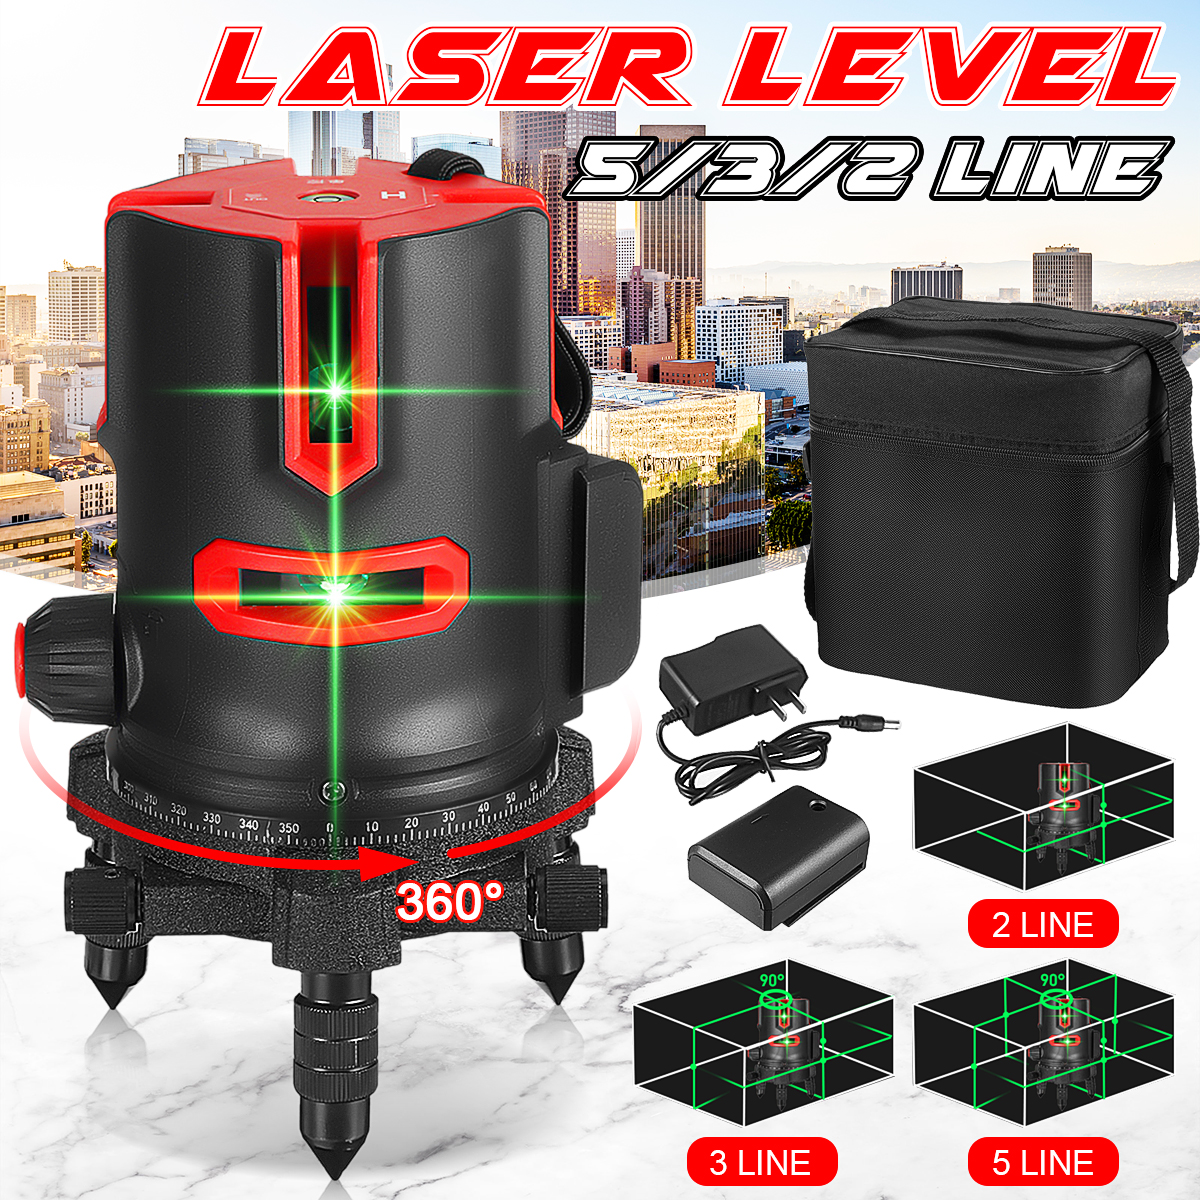 235-Lines-360deg-Rotatable-Laser-Level-Self-Leveling-Green-Light-Alternating-Direct-Horizontal-Verti-1877793-1